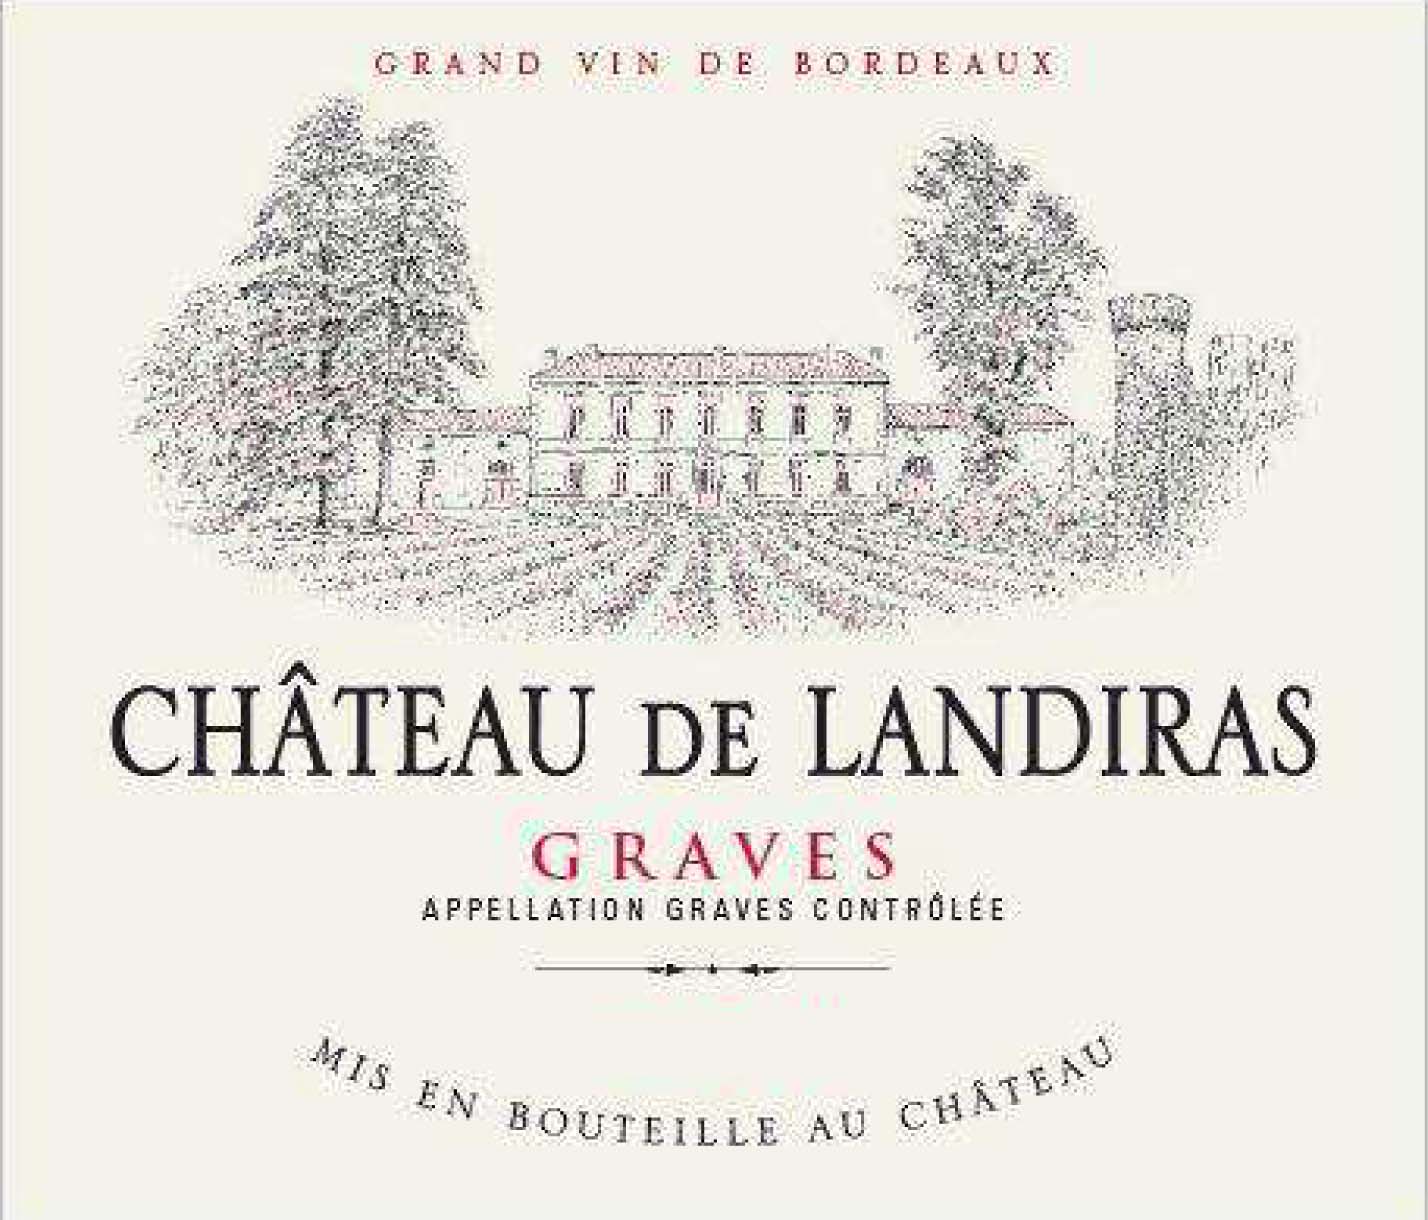 Chateau de Landiras label